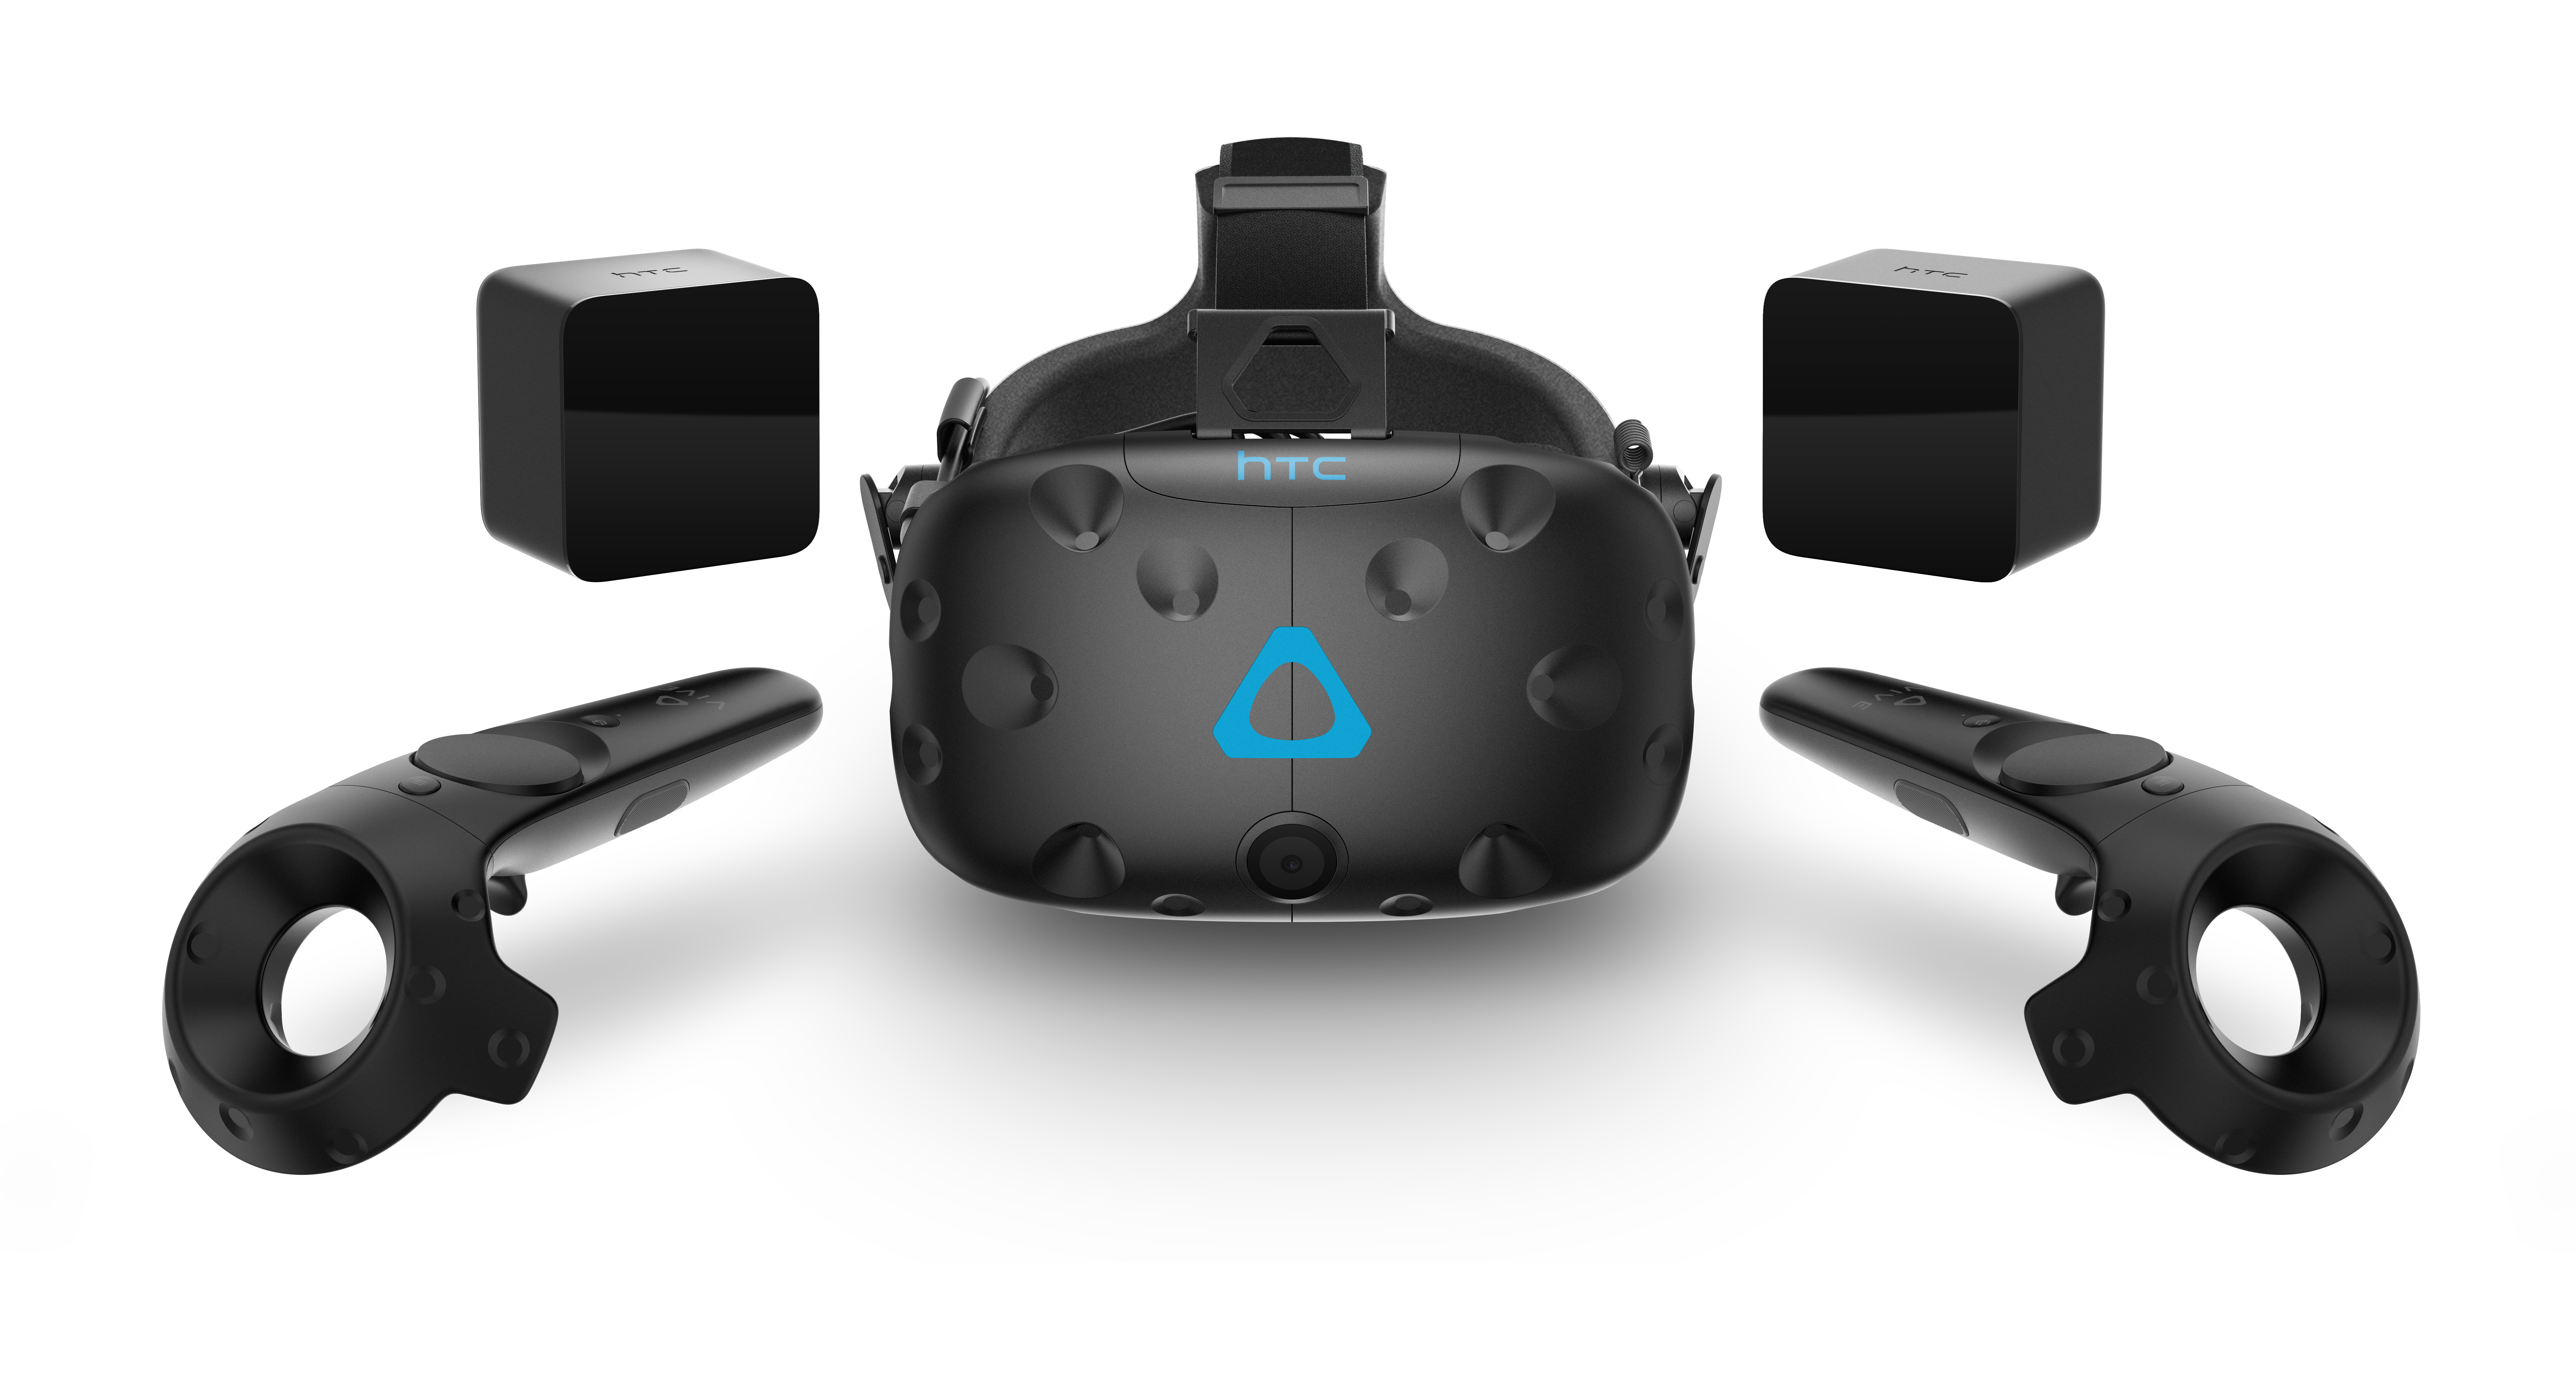 VR очки HTC Vive. ВР очки HTC Vive. VR шлем HTC Viva. VR гарнитура HTC Vive. Игры для vr очков с контроллерами